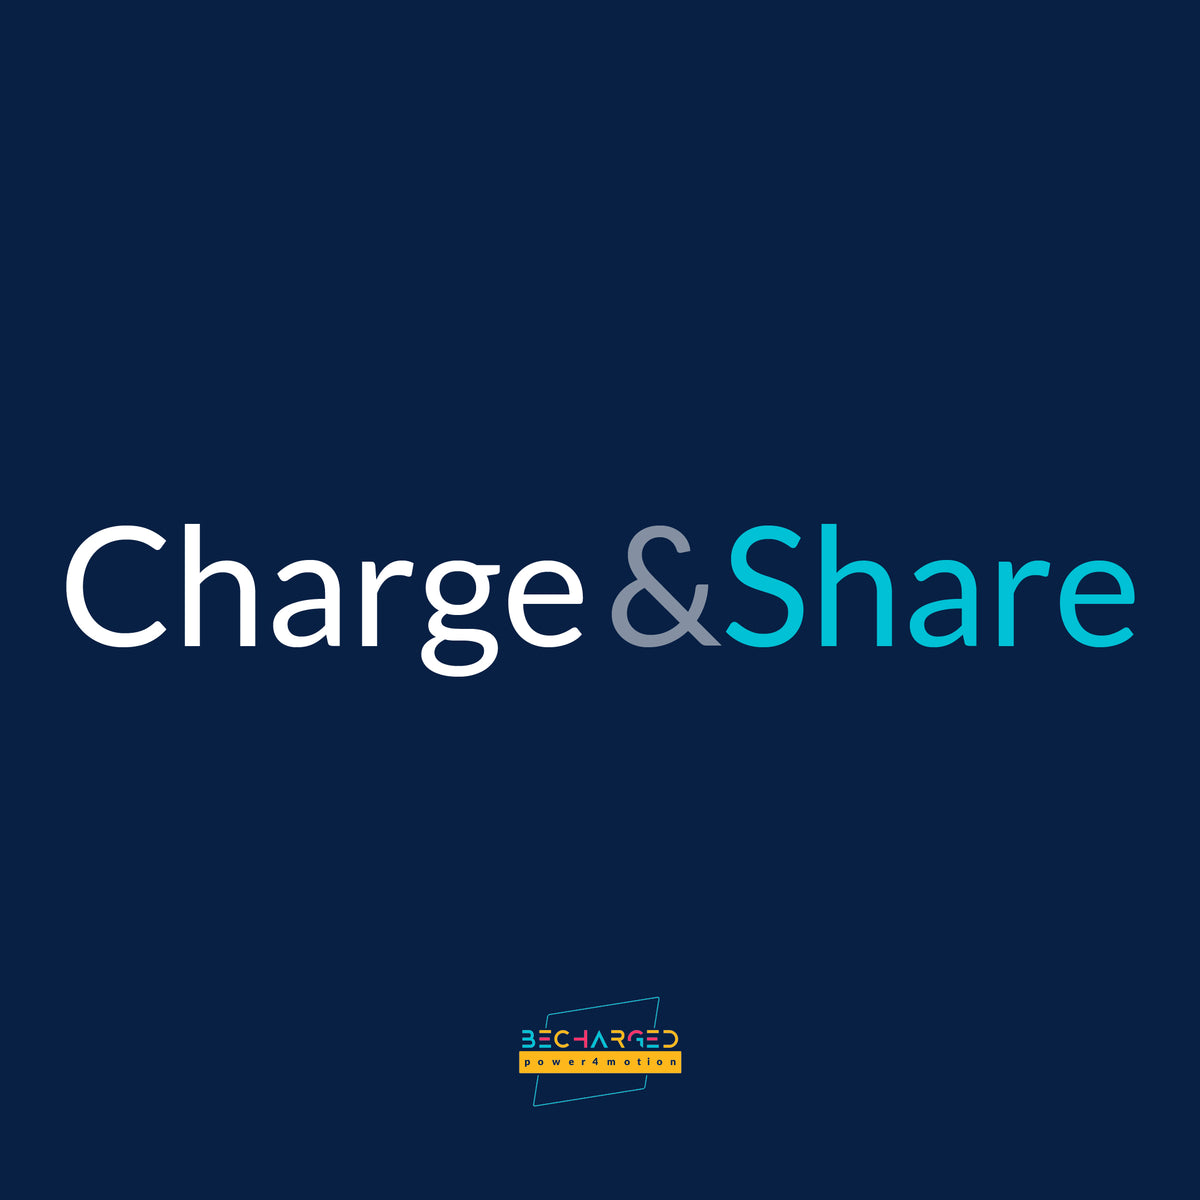 Ein dunkelblauer Hintergrund auf dem der Schriftzug Charge & Share" steht. Unten das becharged Logo.